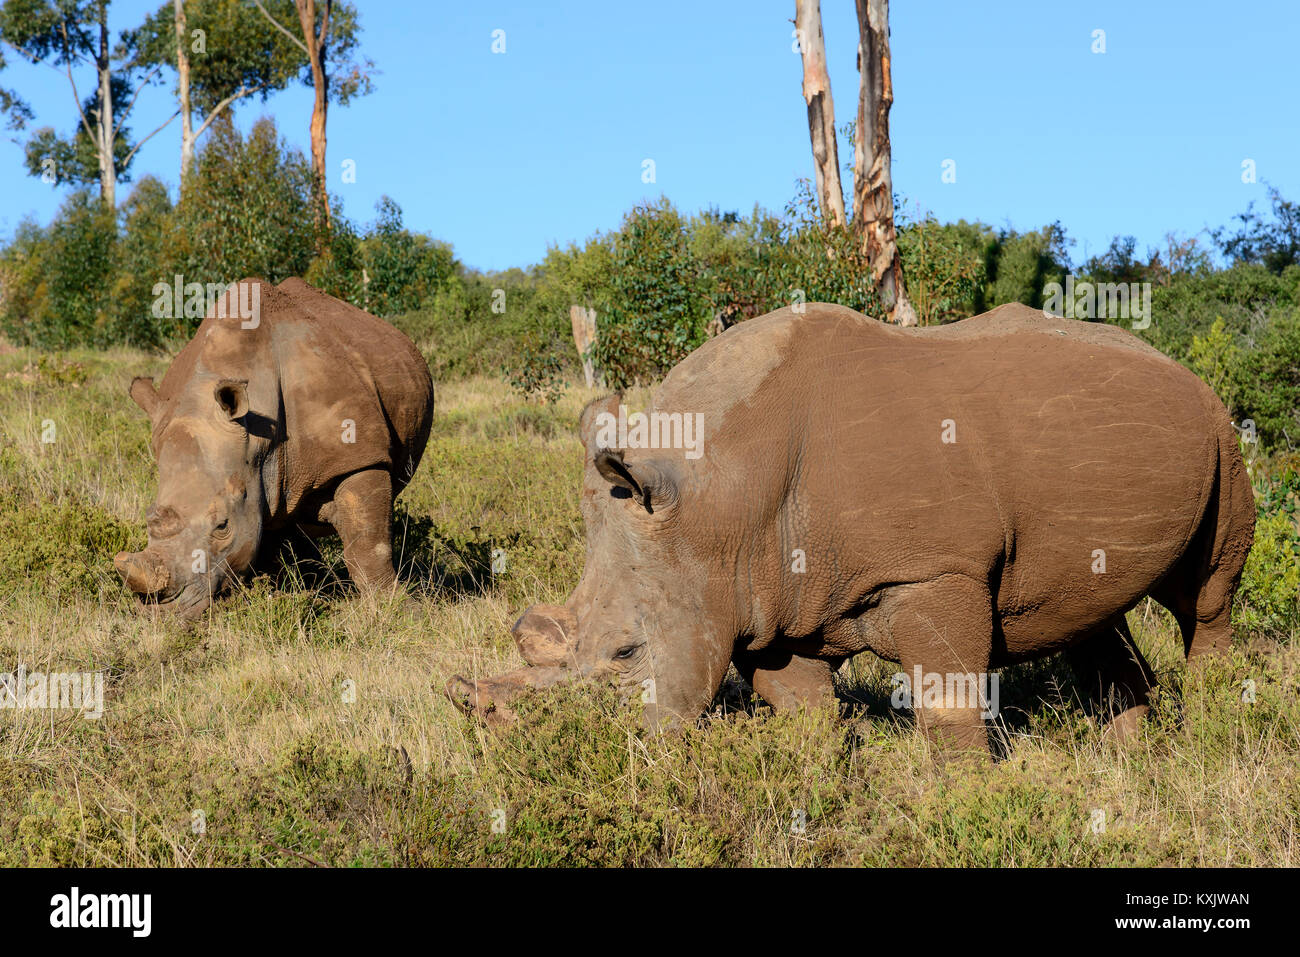 White Rhinoceros, Ceratotherium simum, South Africa, Porth Elizabeth, Schotia Safaris Private Game Reserve park Stock Photo